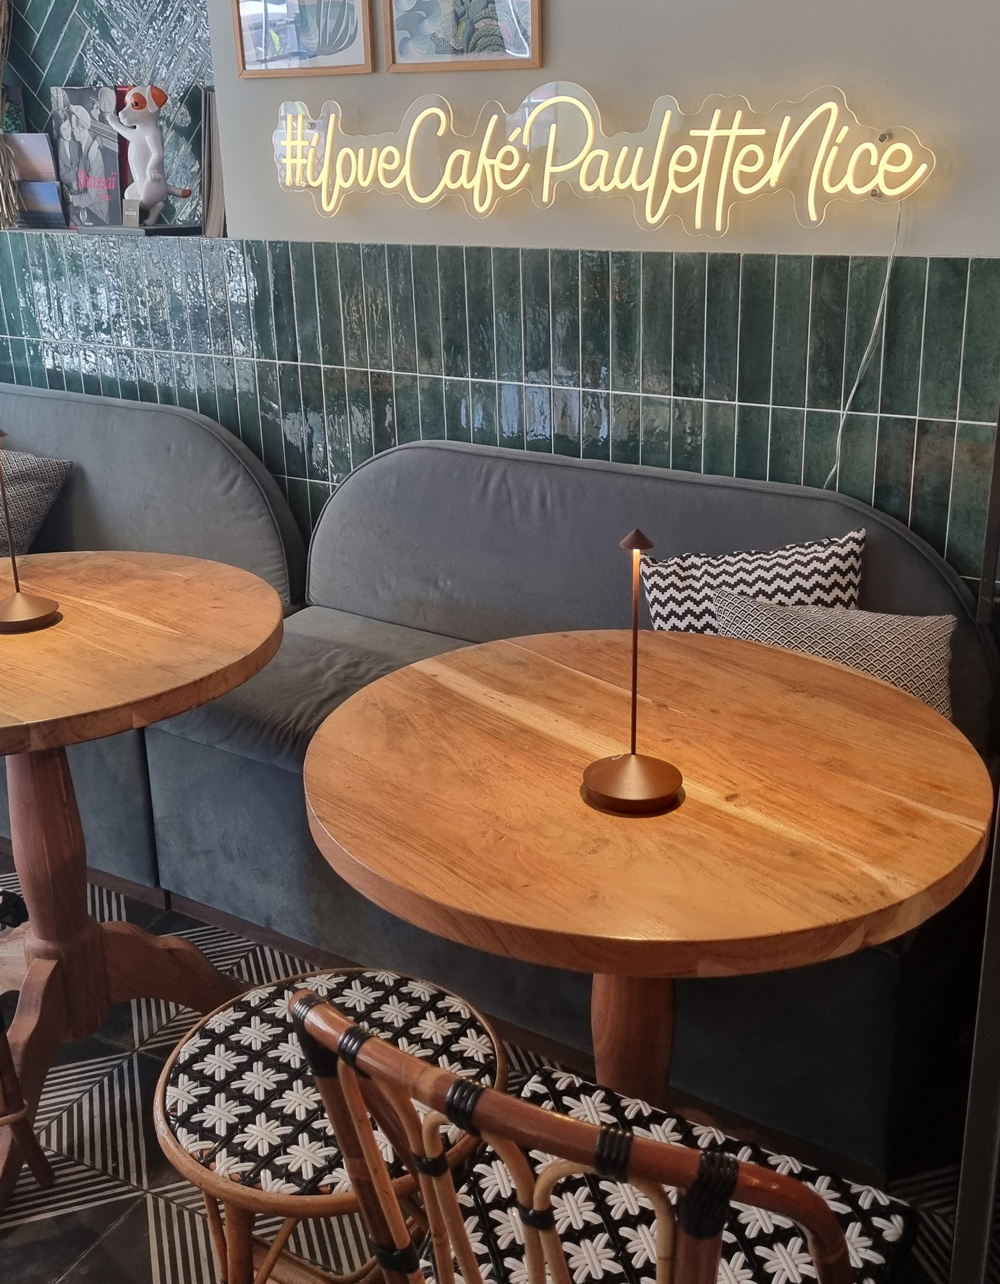 Tables at Café Paulette